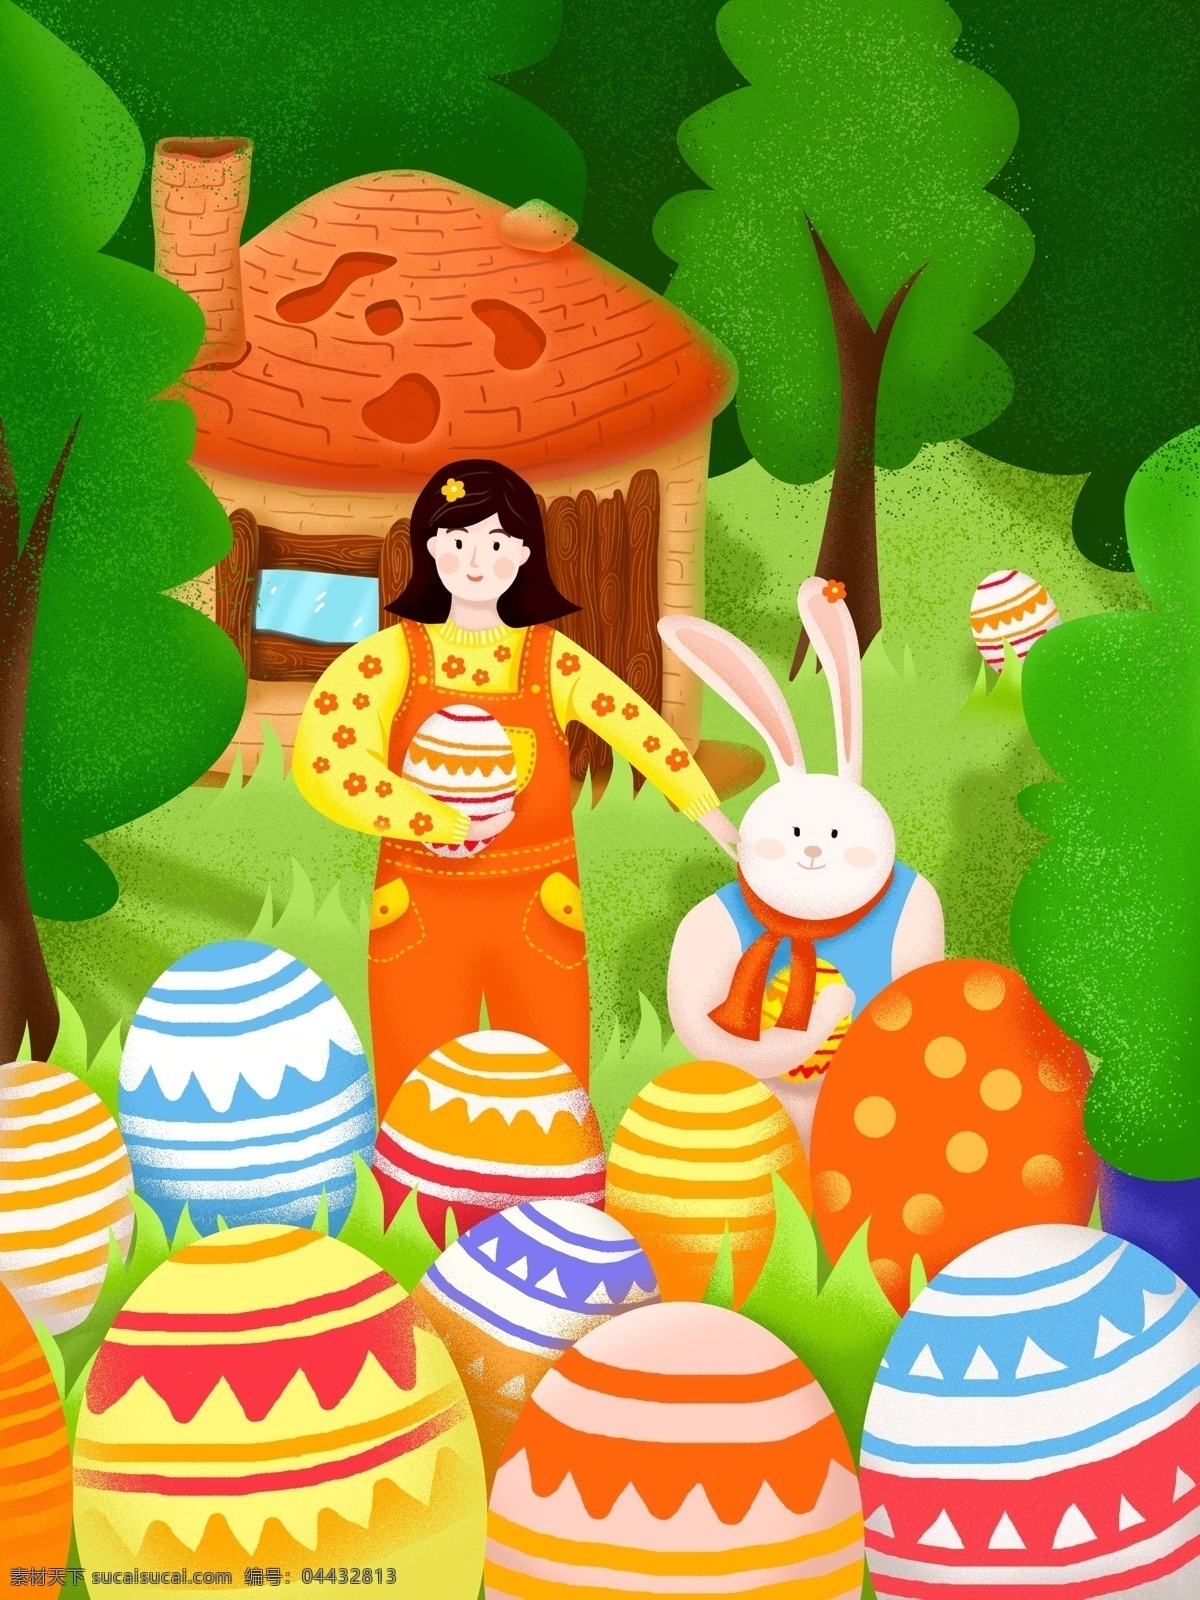 复活节 兔子 彩蛋 女孩 欢度 派对 节日 插画 小木屋 插图 噪点 肌理 手绘 原创